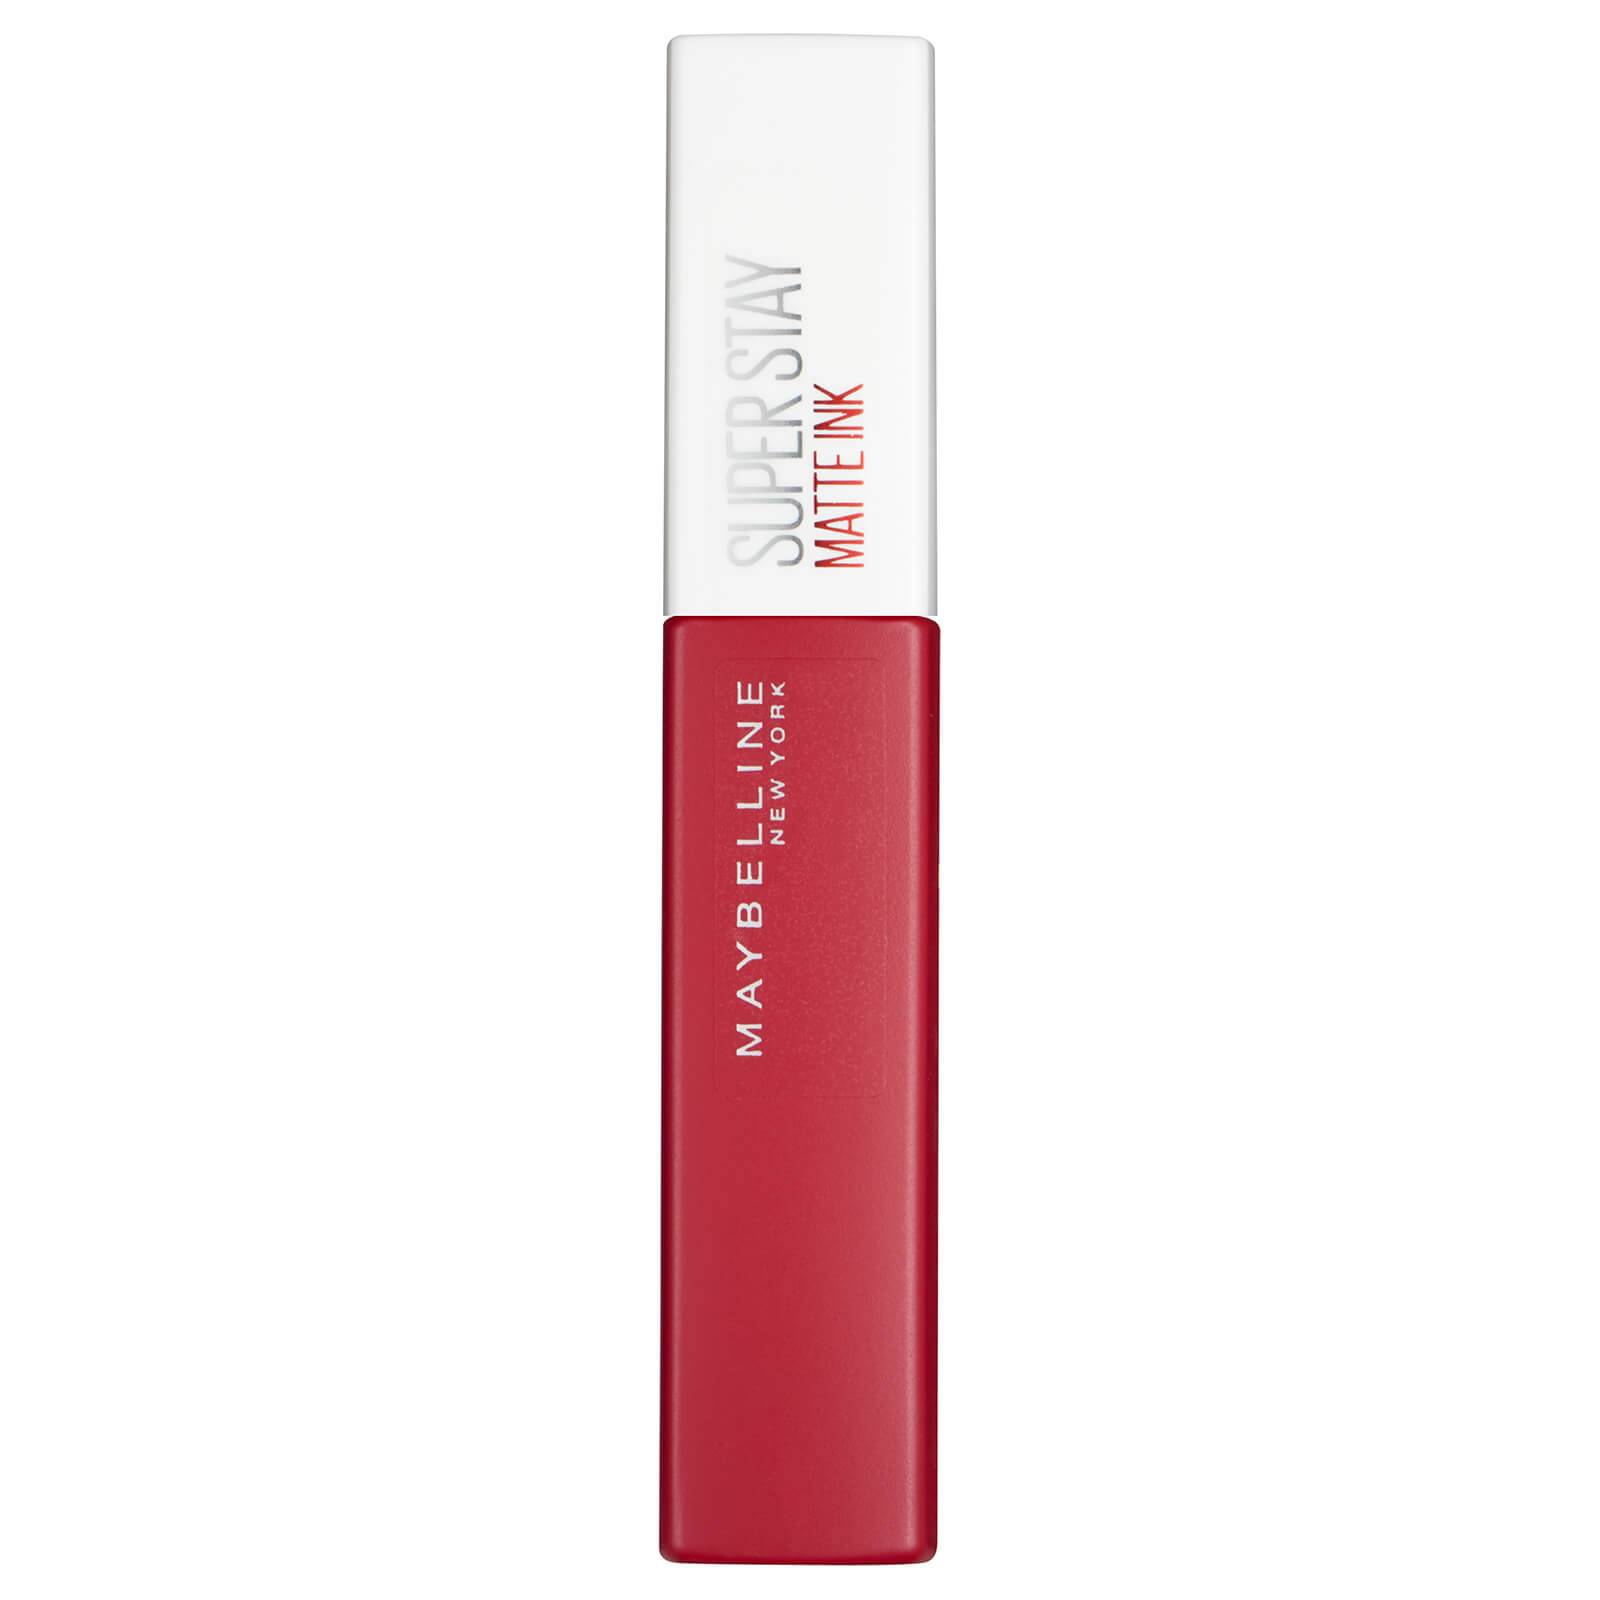 maybelline superstay 24 matte ink lipstick (forskellige nuancer) - 20 pioneer